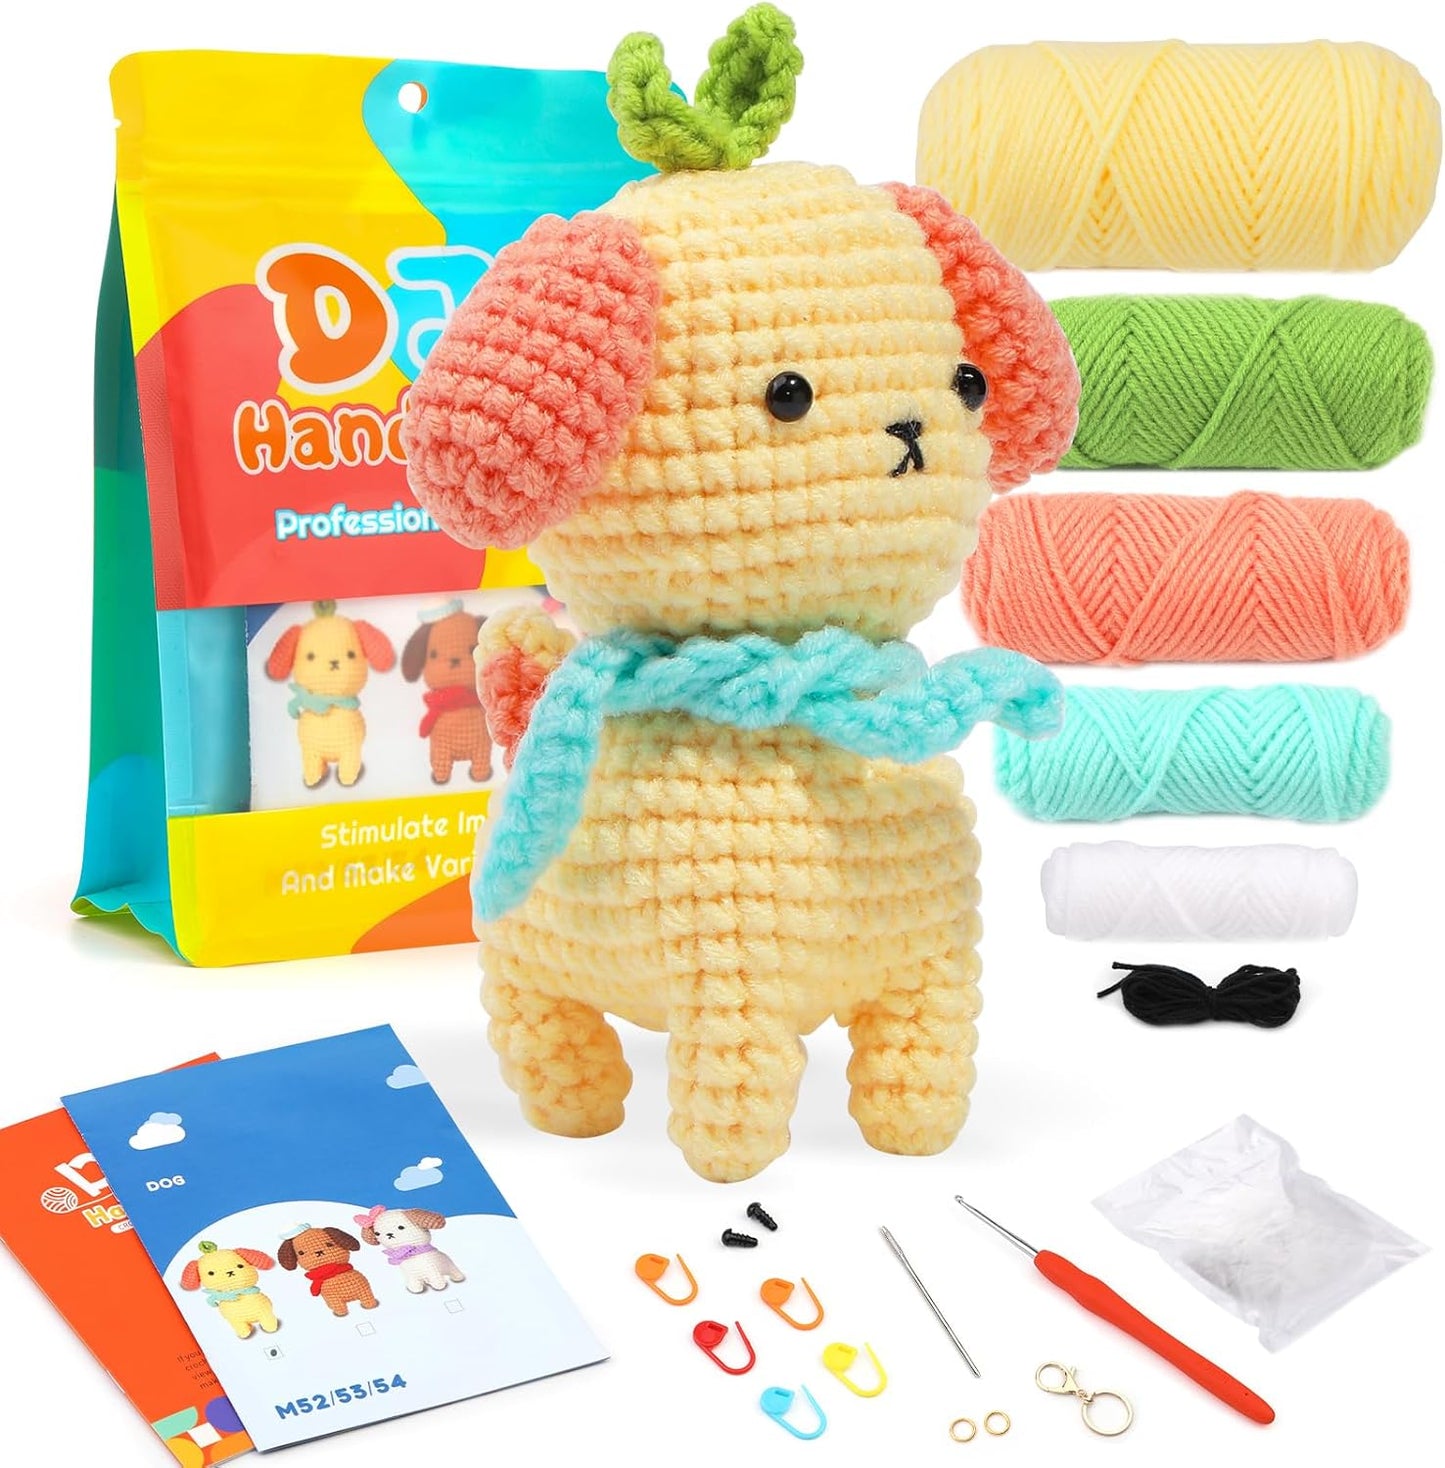 Beginners Crochet Kit, Crochet Animal Kit, Knitting Kit with Yarn, Polyester Fiber, Crochet Hooks, Step-By-Step Instructions Video, Crochet Starter Kit for Beginner DIY Craft Art (Dinosaur)